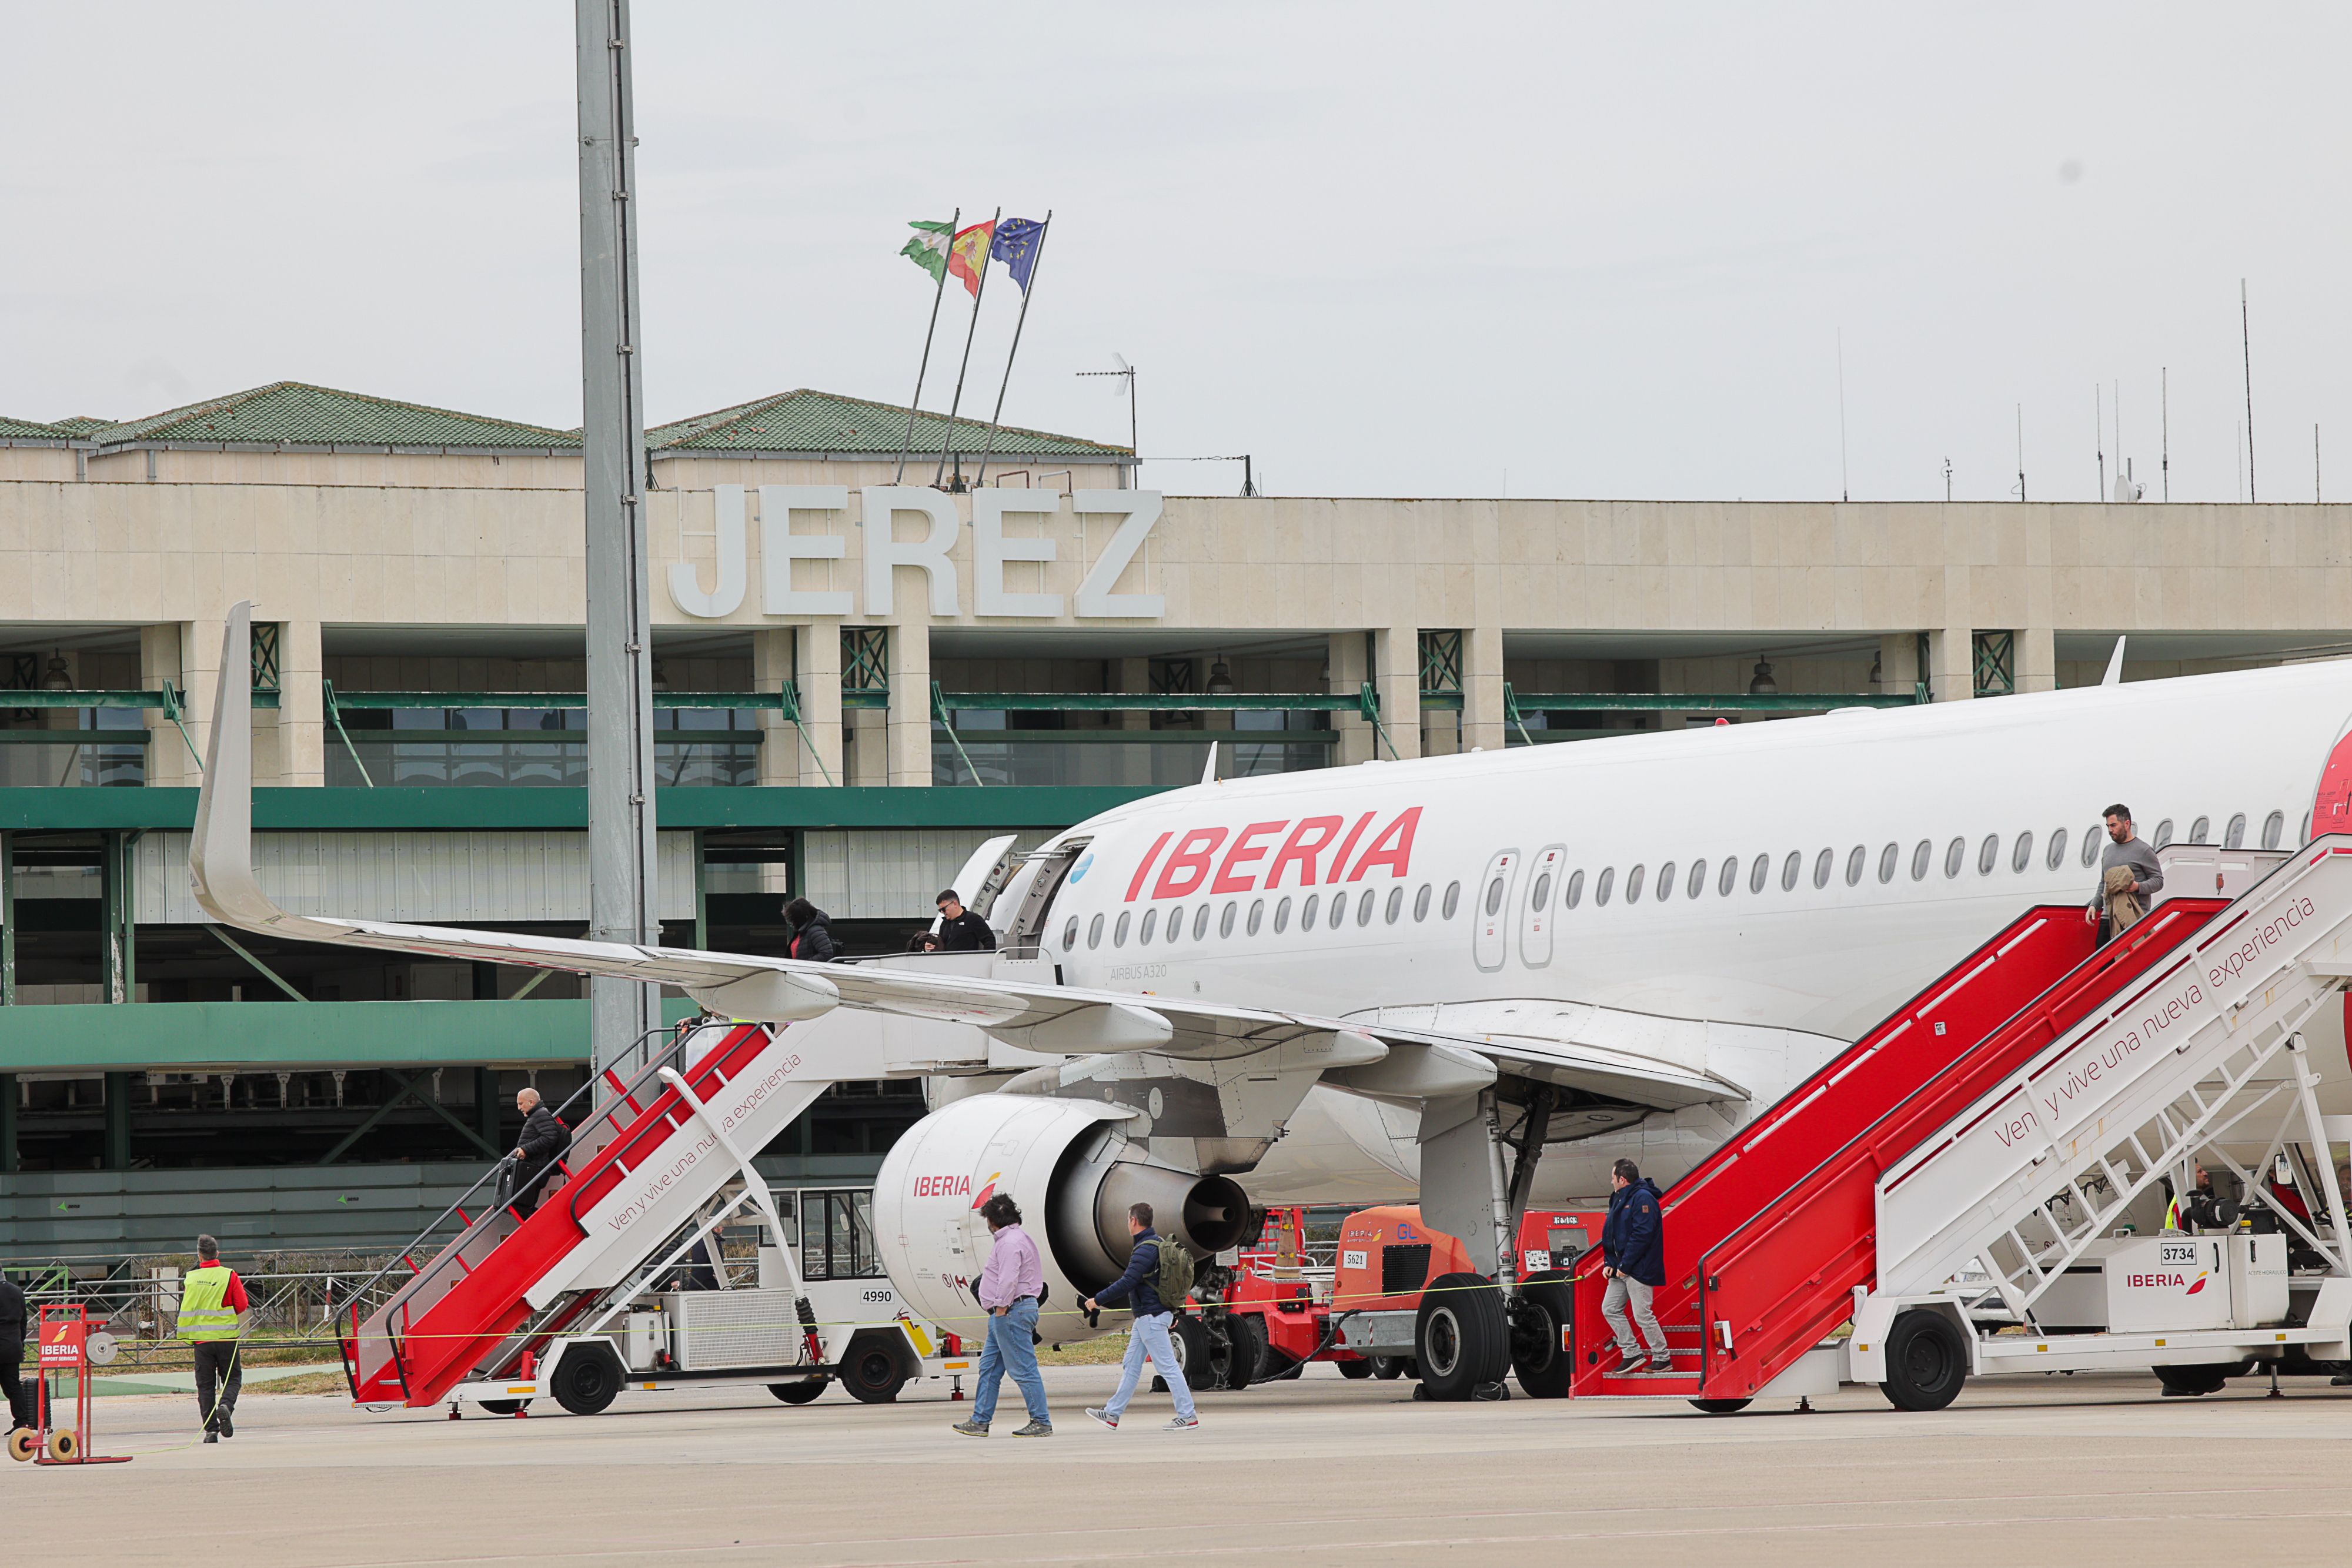 Un vuelo de Iberia en el aeropuerto de Jerez, en una imagen de archivo.